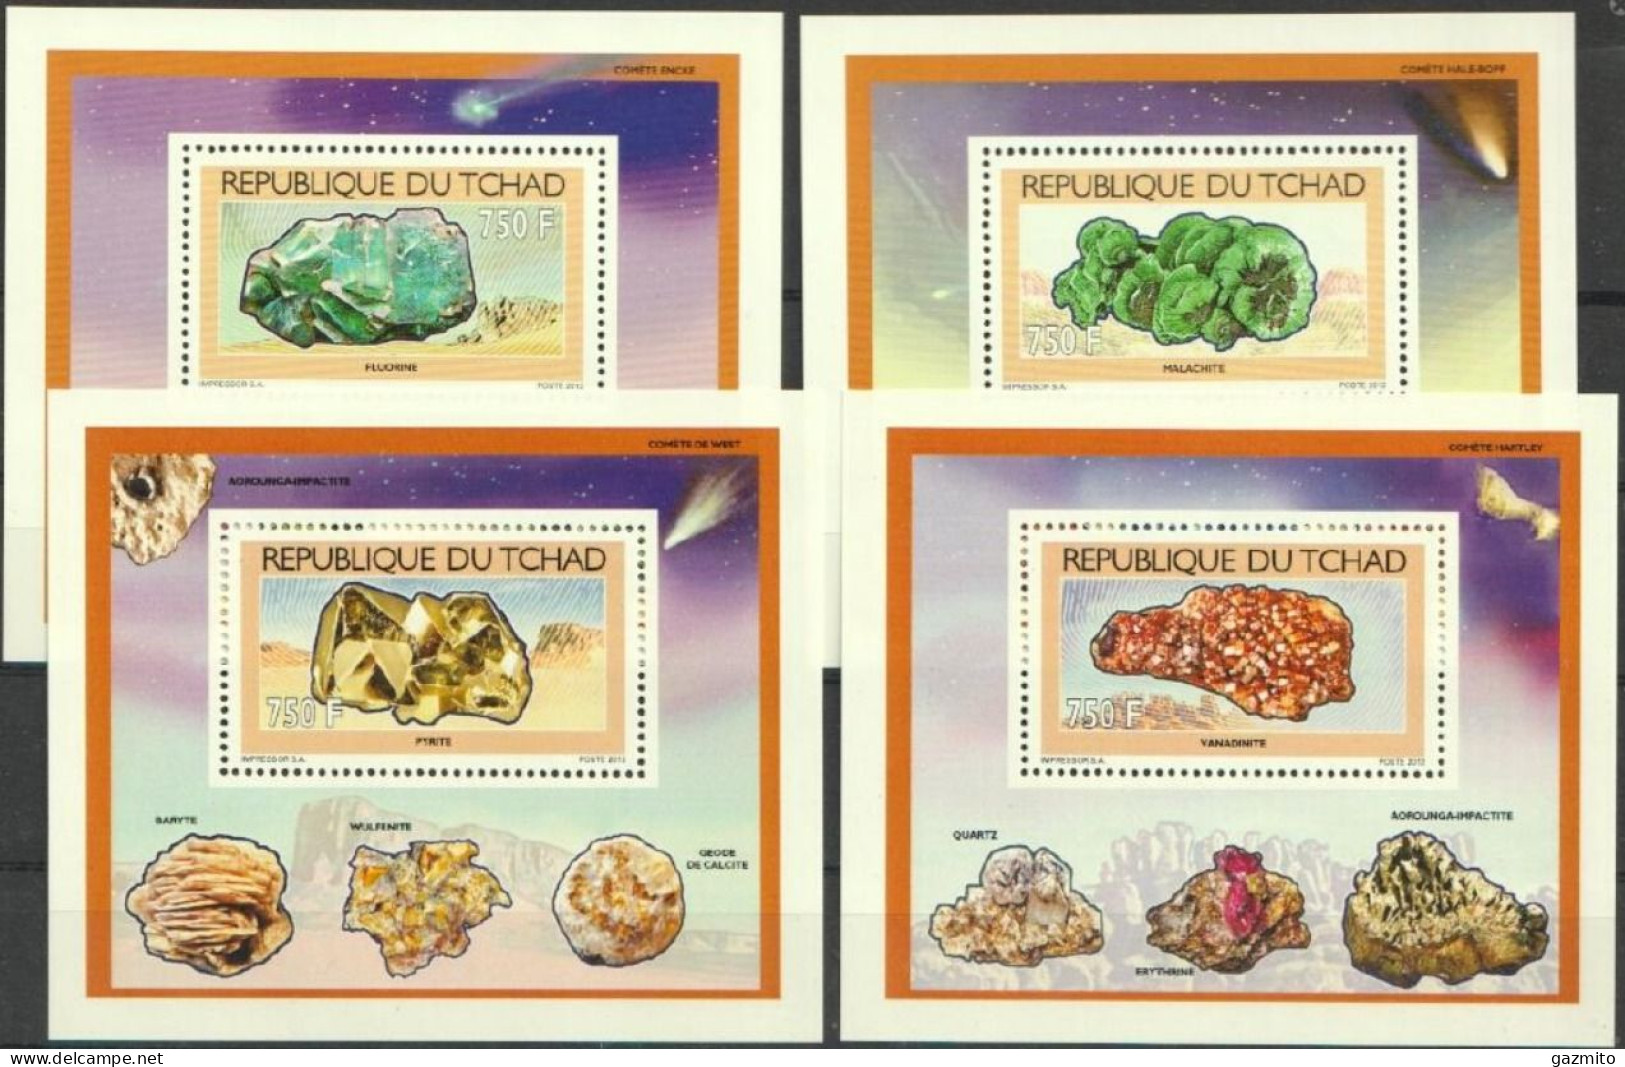 Tchad 2012, Minerals, 4BF - Tsjaad (1960-...)